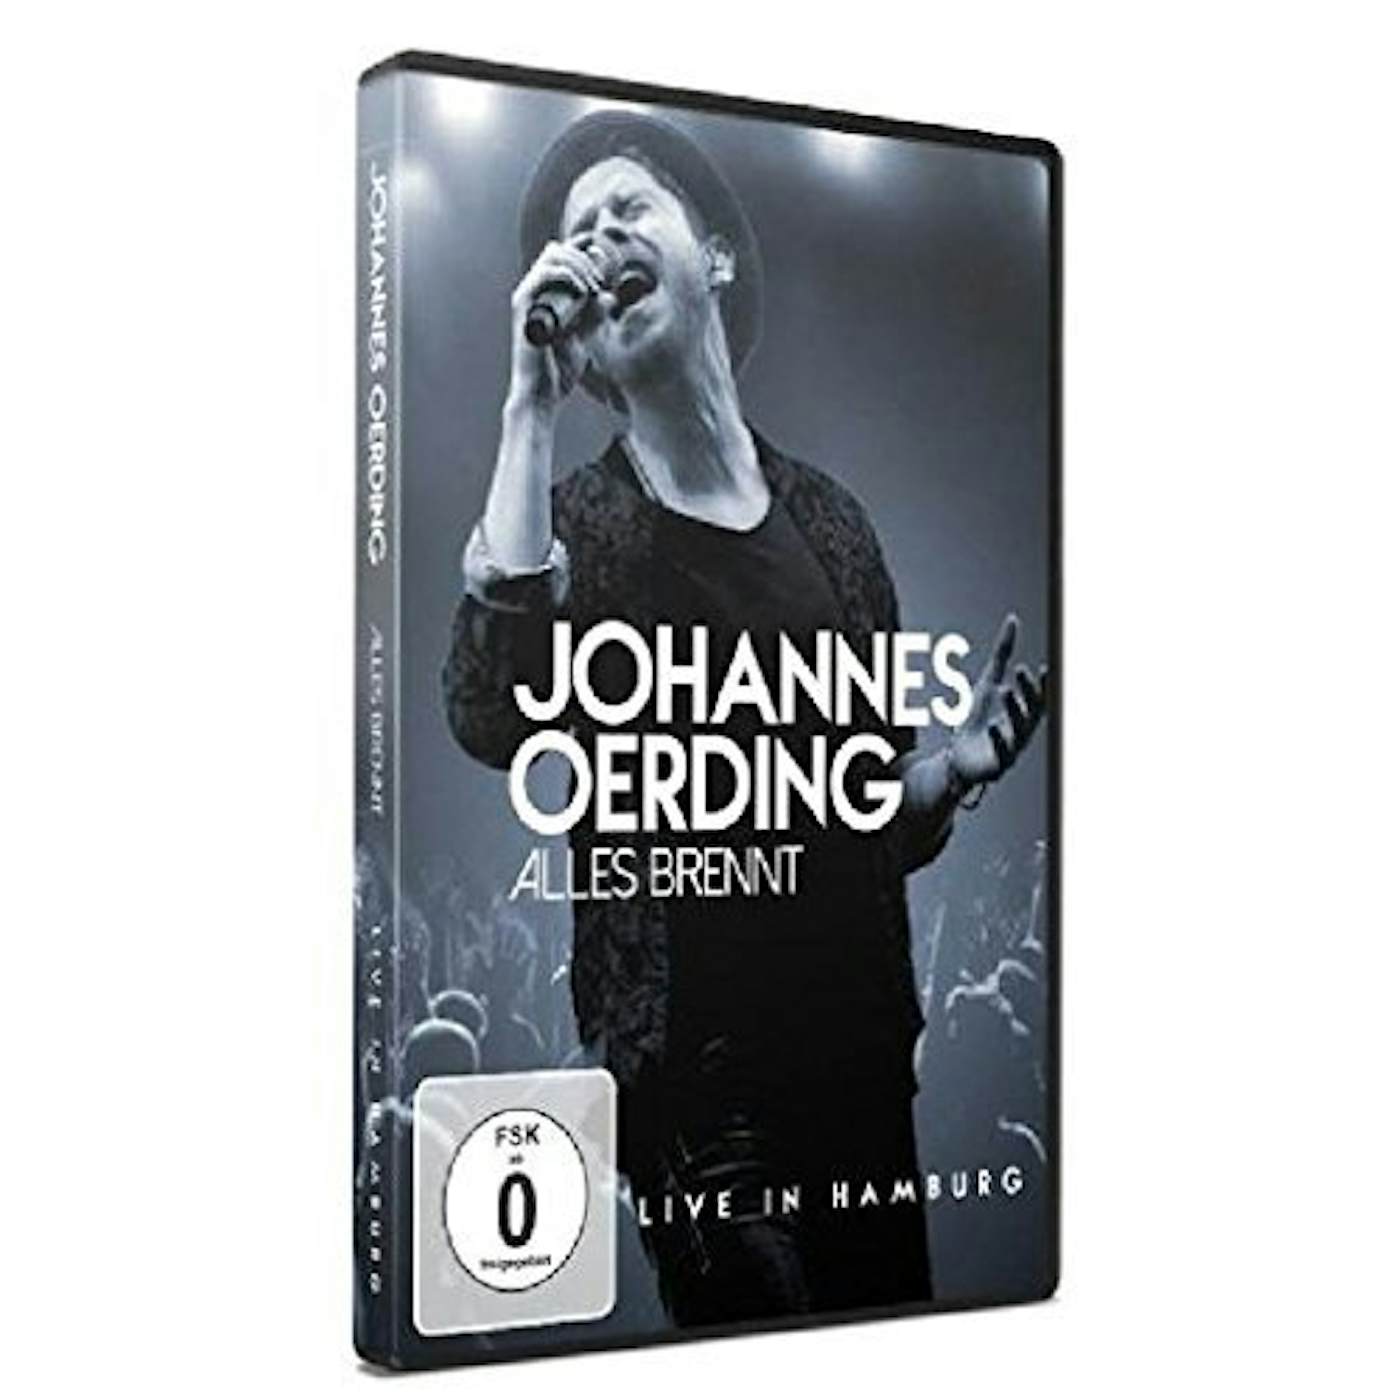 Johannes Oerding ALLES BRENNT : LIVE IN HAMBURG DVD